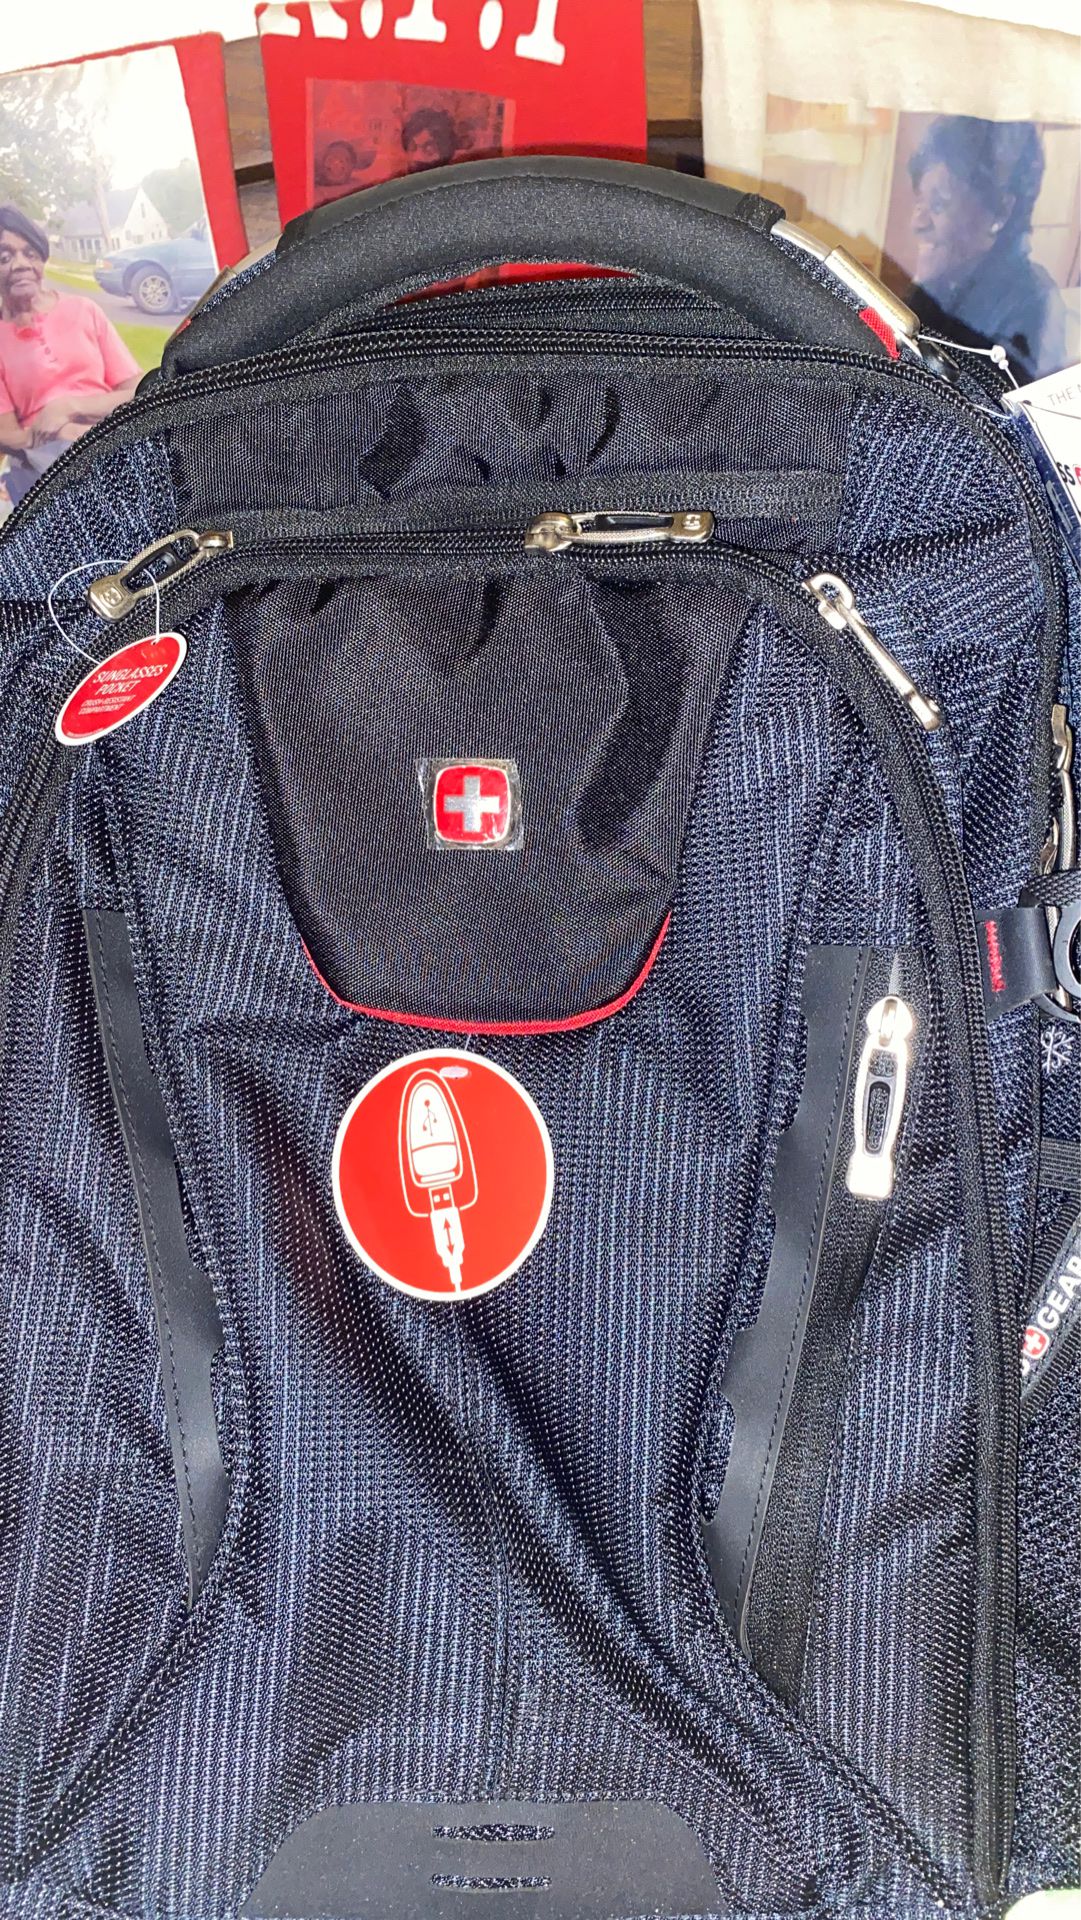 Swiss gear usb scanmart backpack